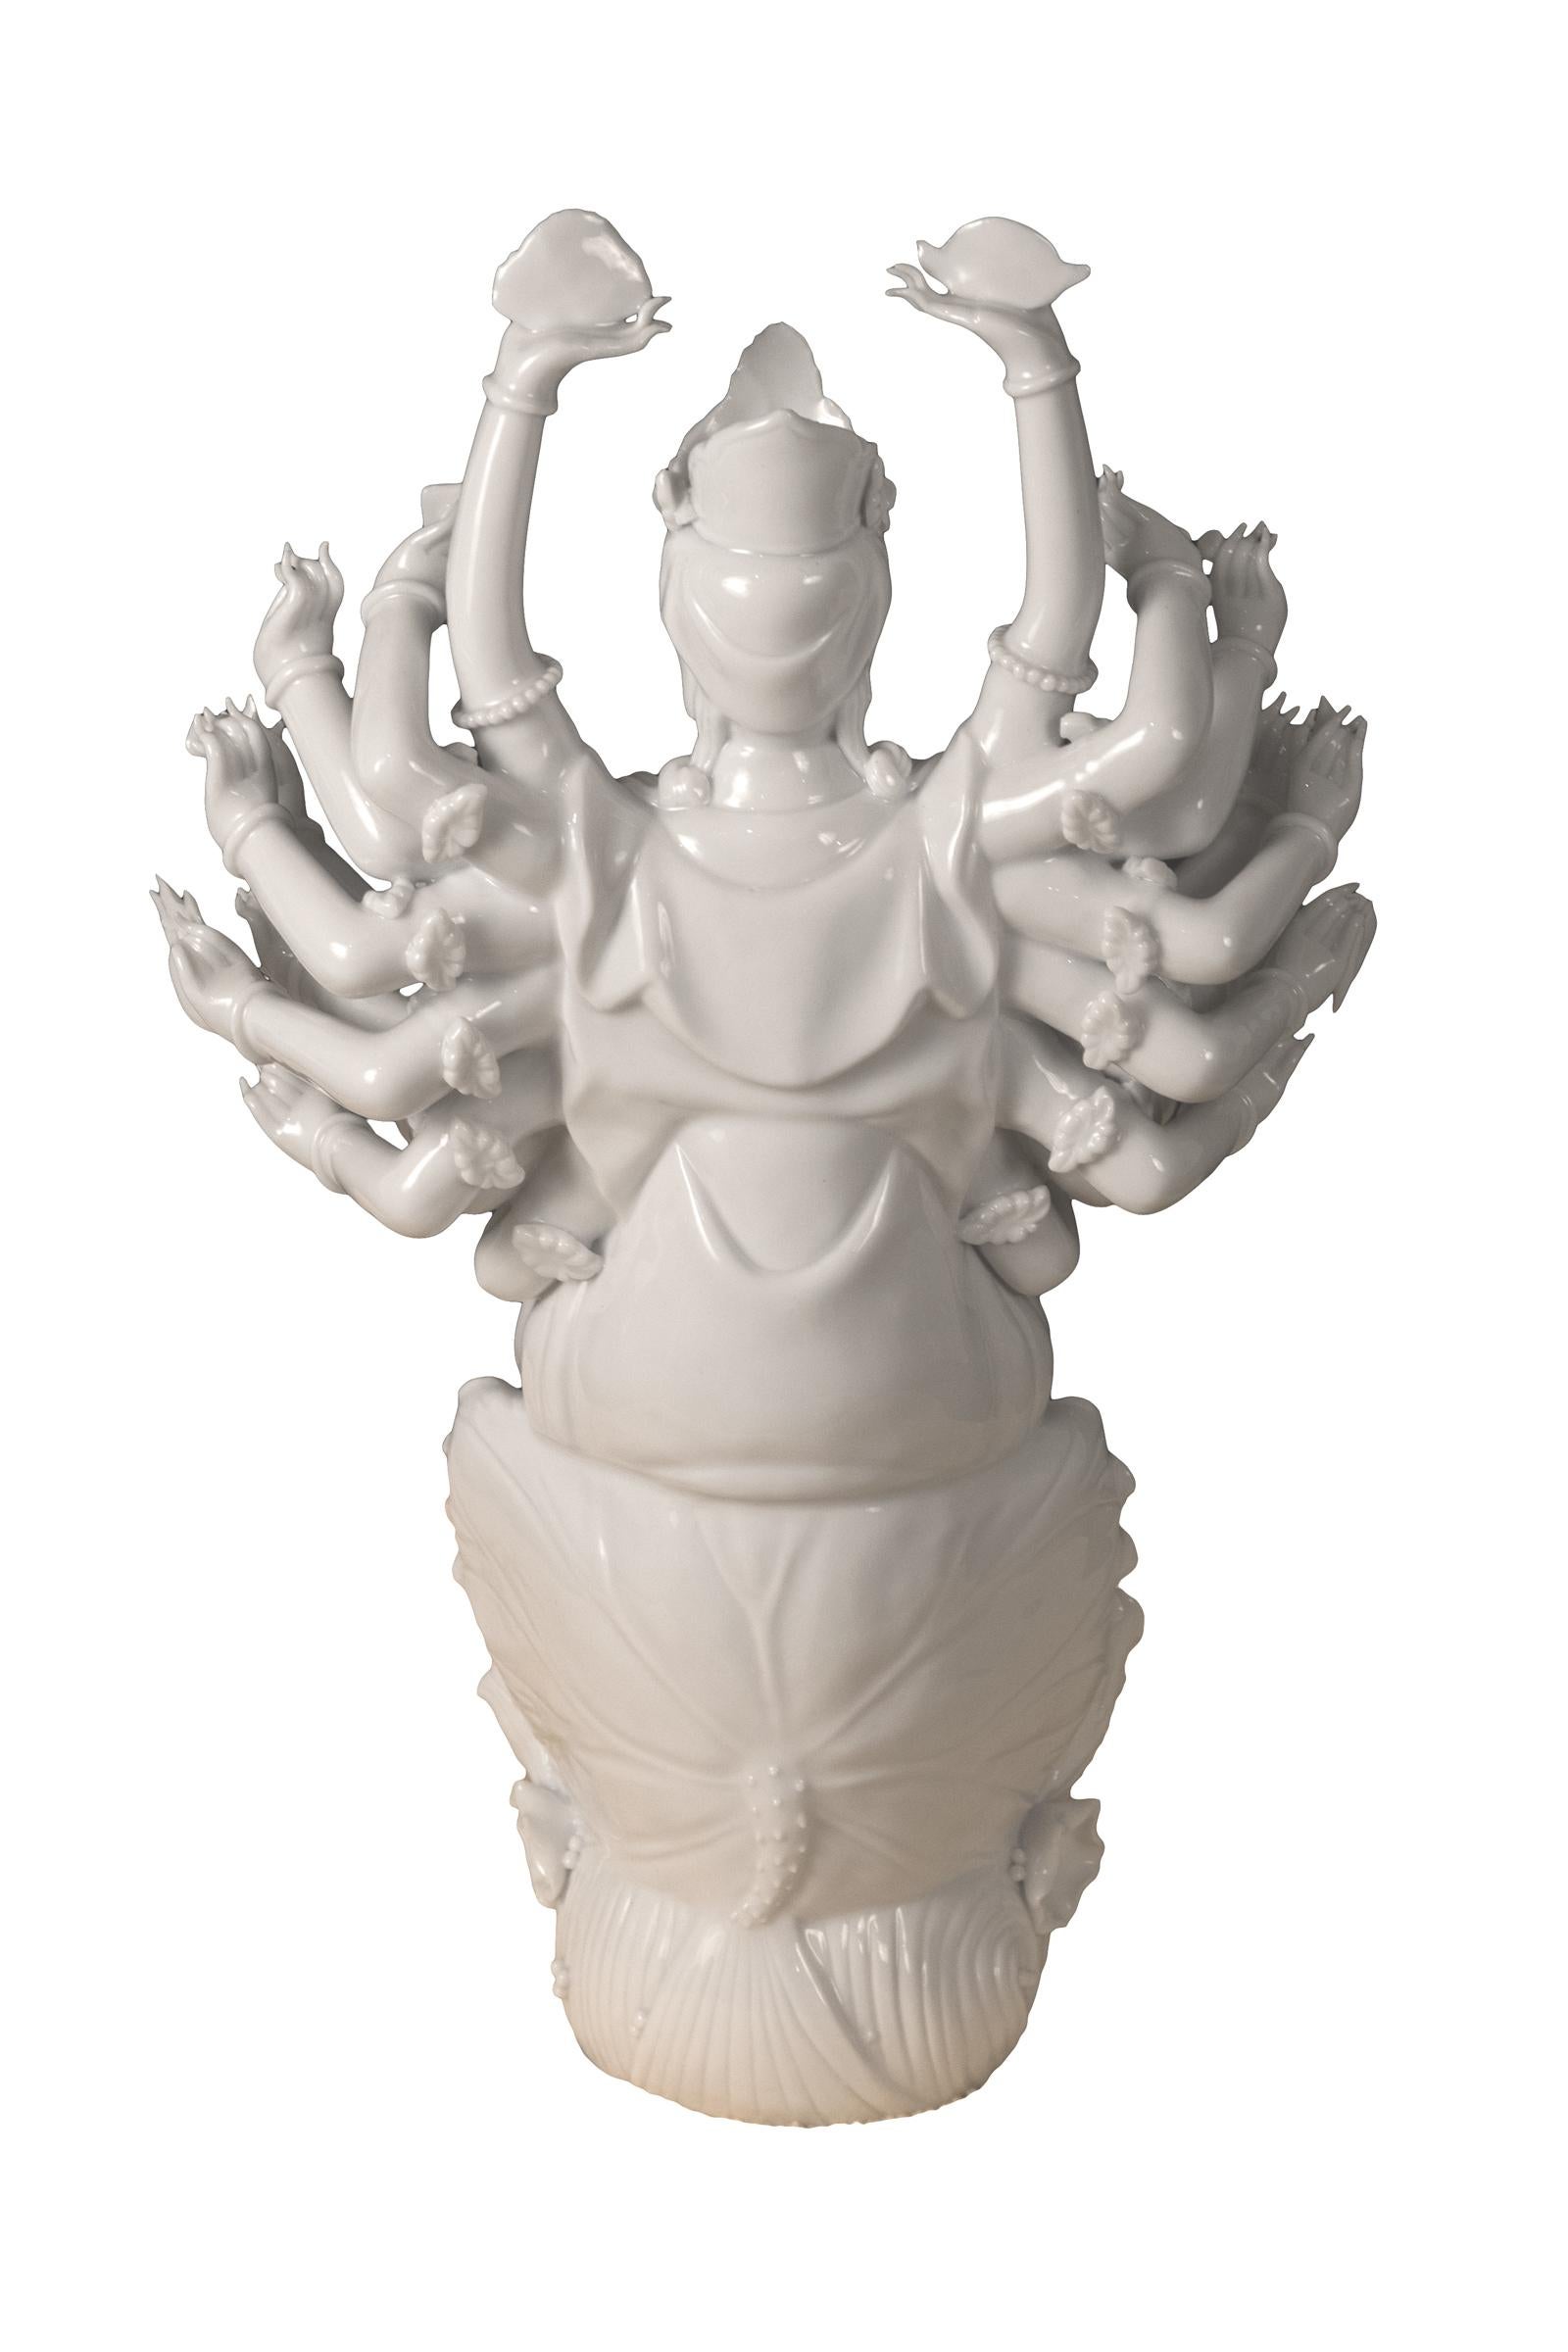 Chinese Blanc de Chine 'Dehua' Porcelain Figure of Guanyin, circa 1980